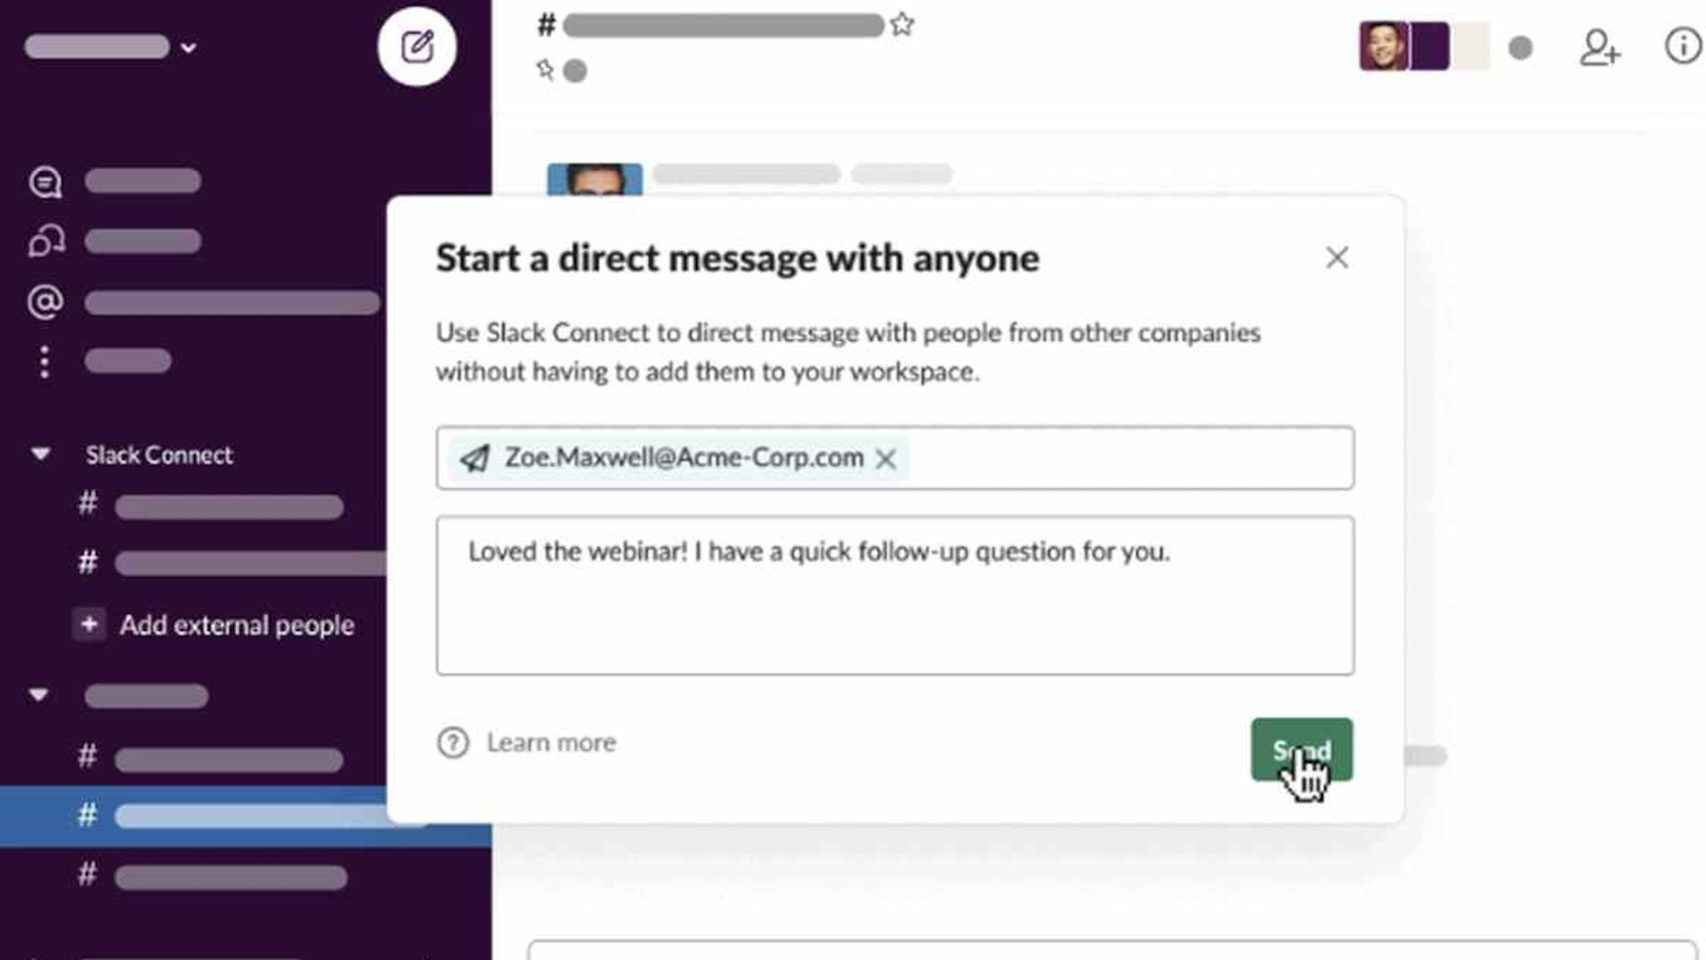 La nueva función de Slack permite enviar mensajes a cualquiera